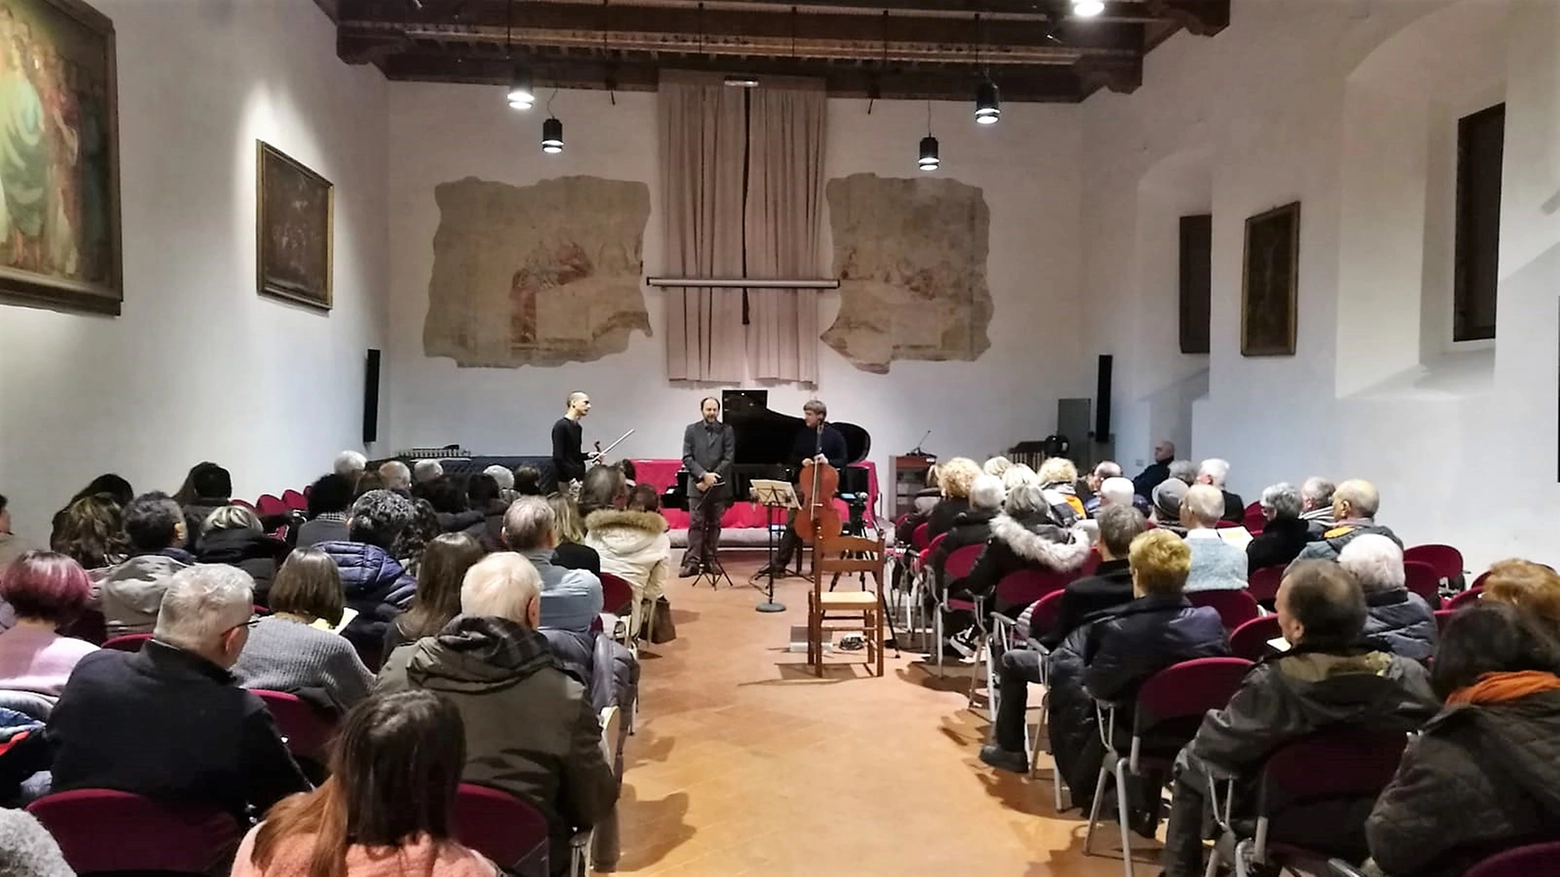 A febbraio musica d’arte a Pistoia (venerdì 7), Monsummano Terme (sabato 8) e a Pescia (domenica 9), ad ingresso libero fino ad esaurimento posti